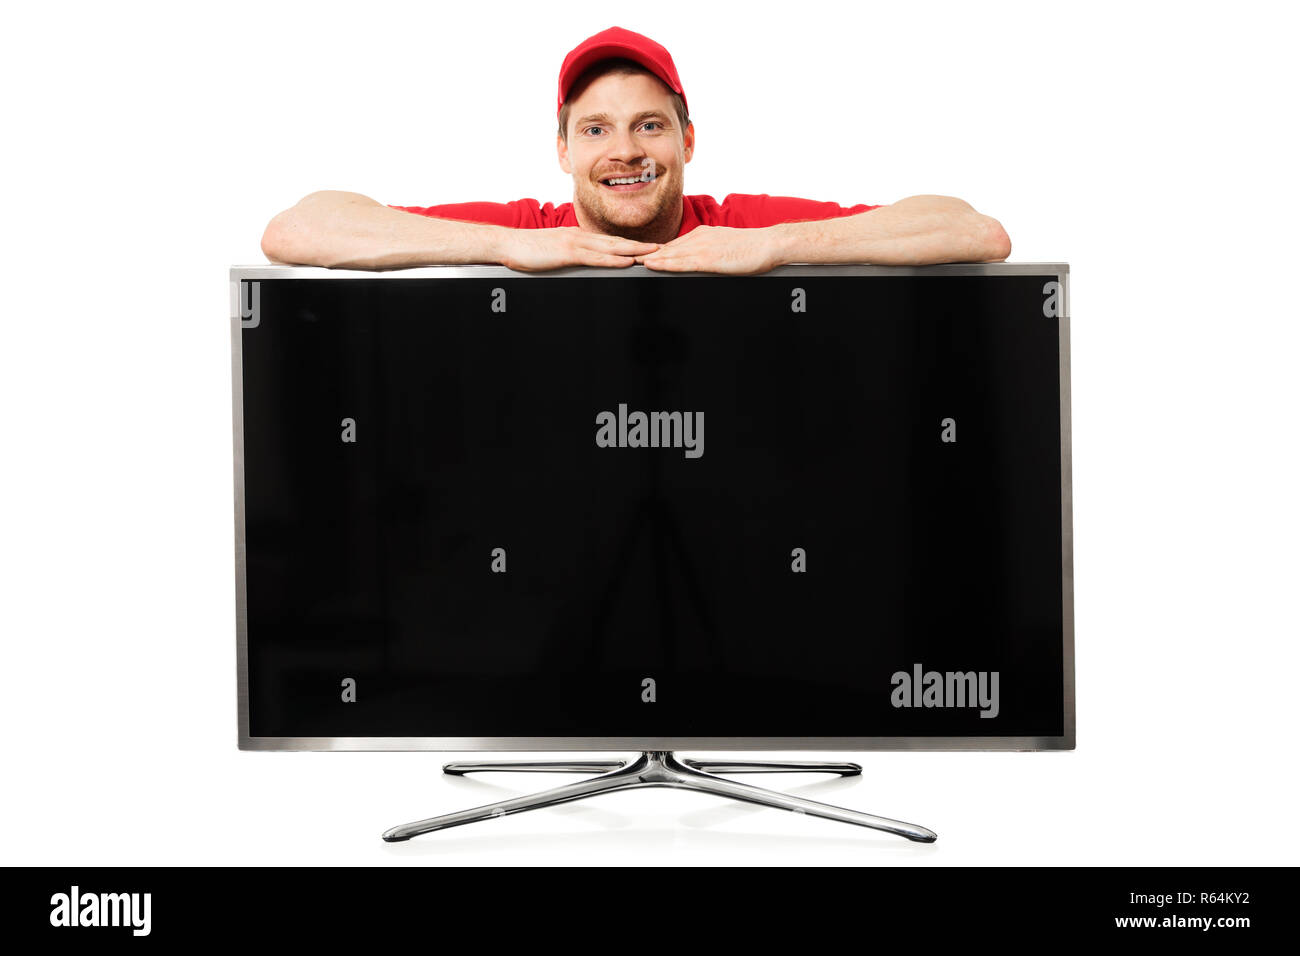 Lächelnd Verkäufer in roter Uniform über große Leere TV-Bildschirm auf weißem Hintergrund Stockfoto